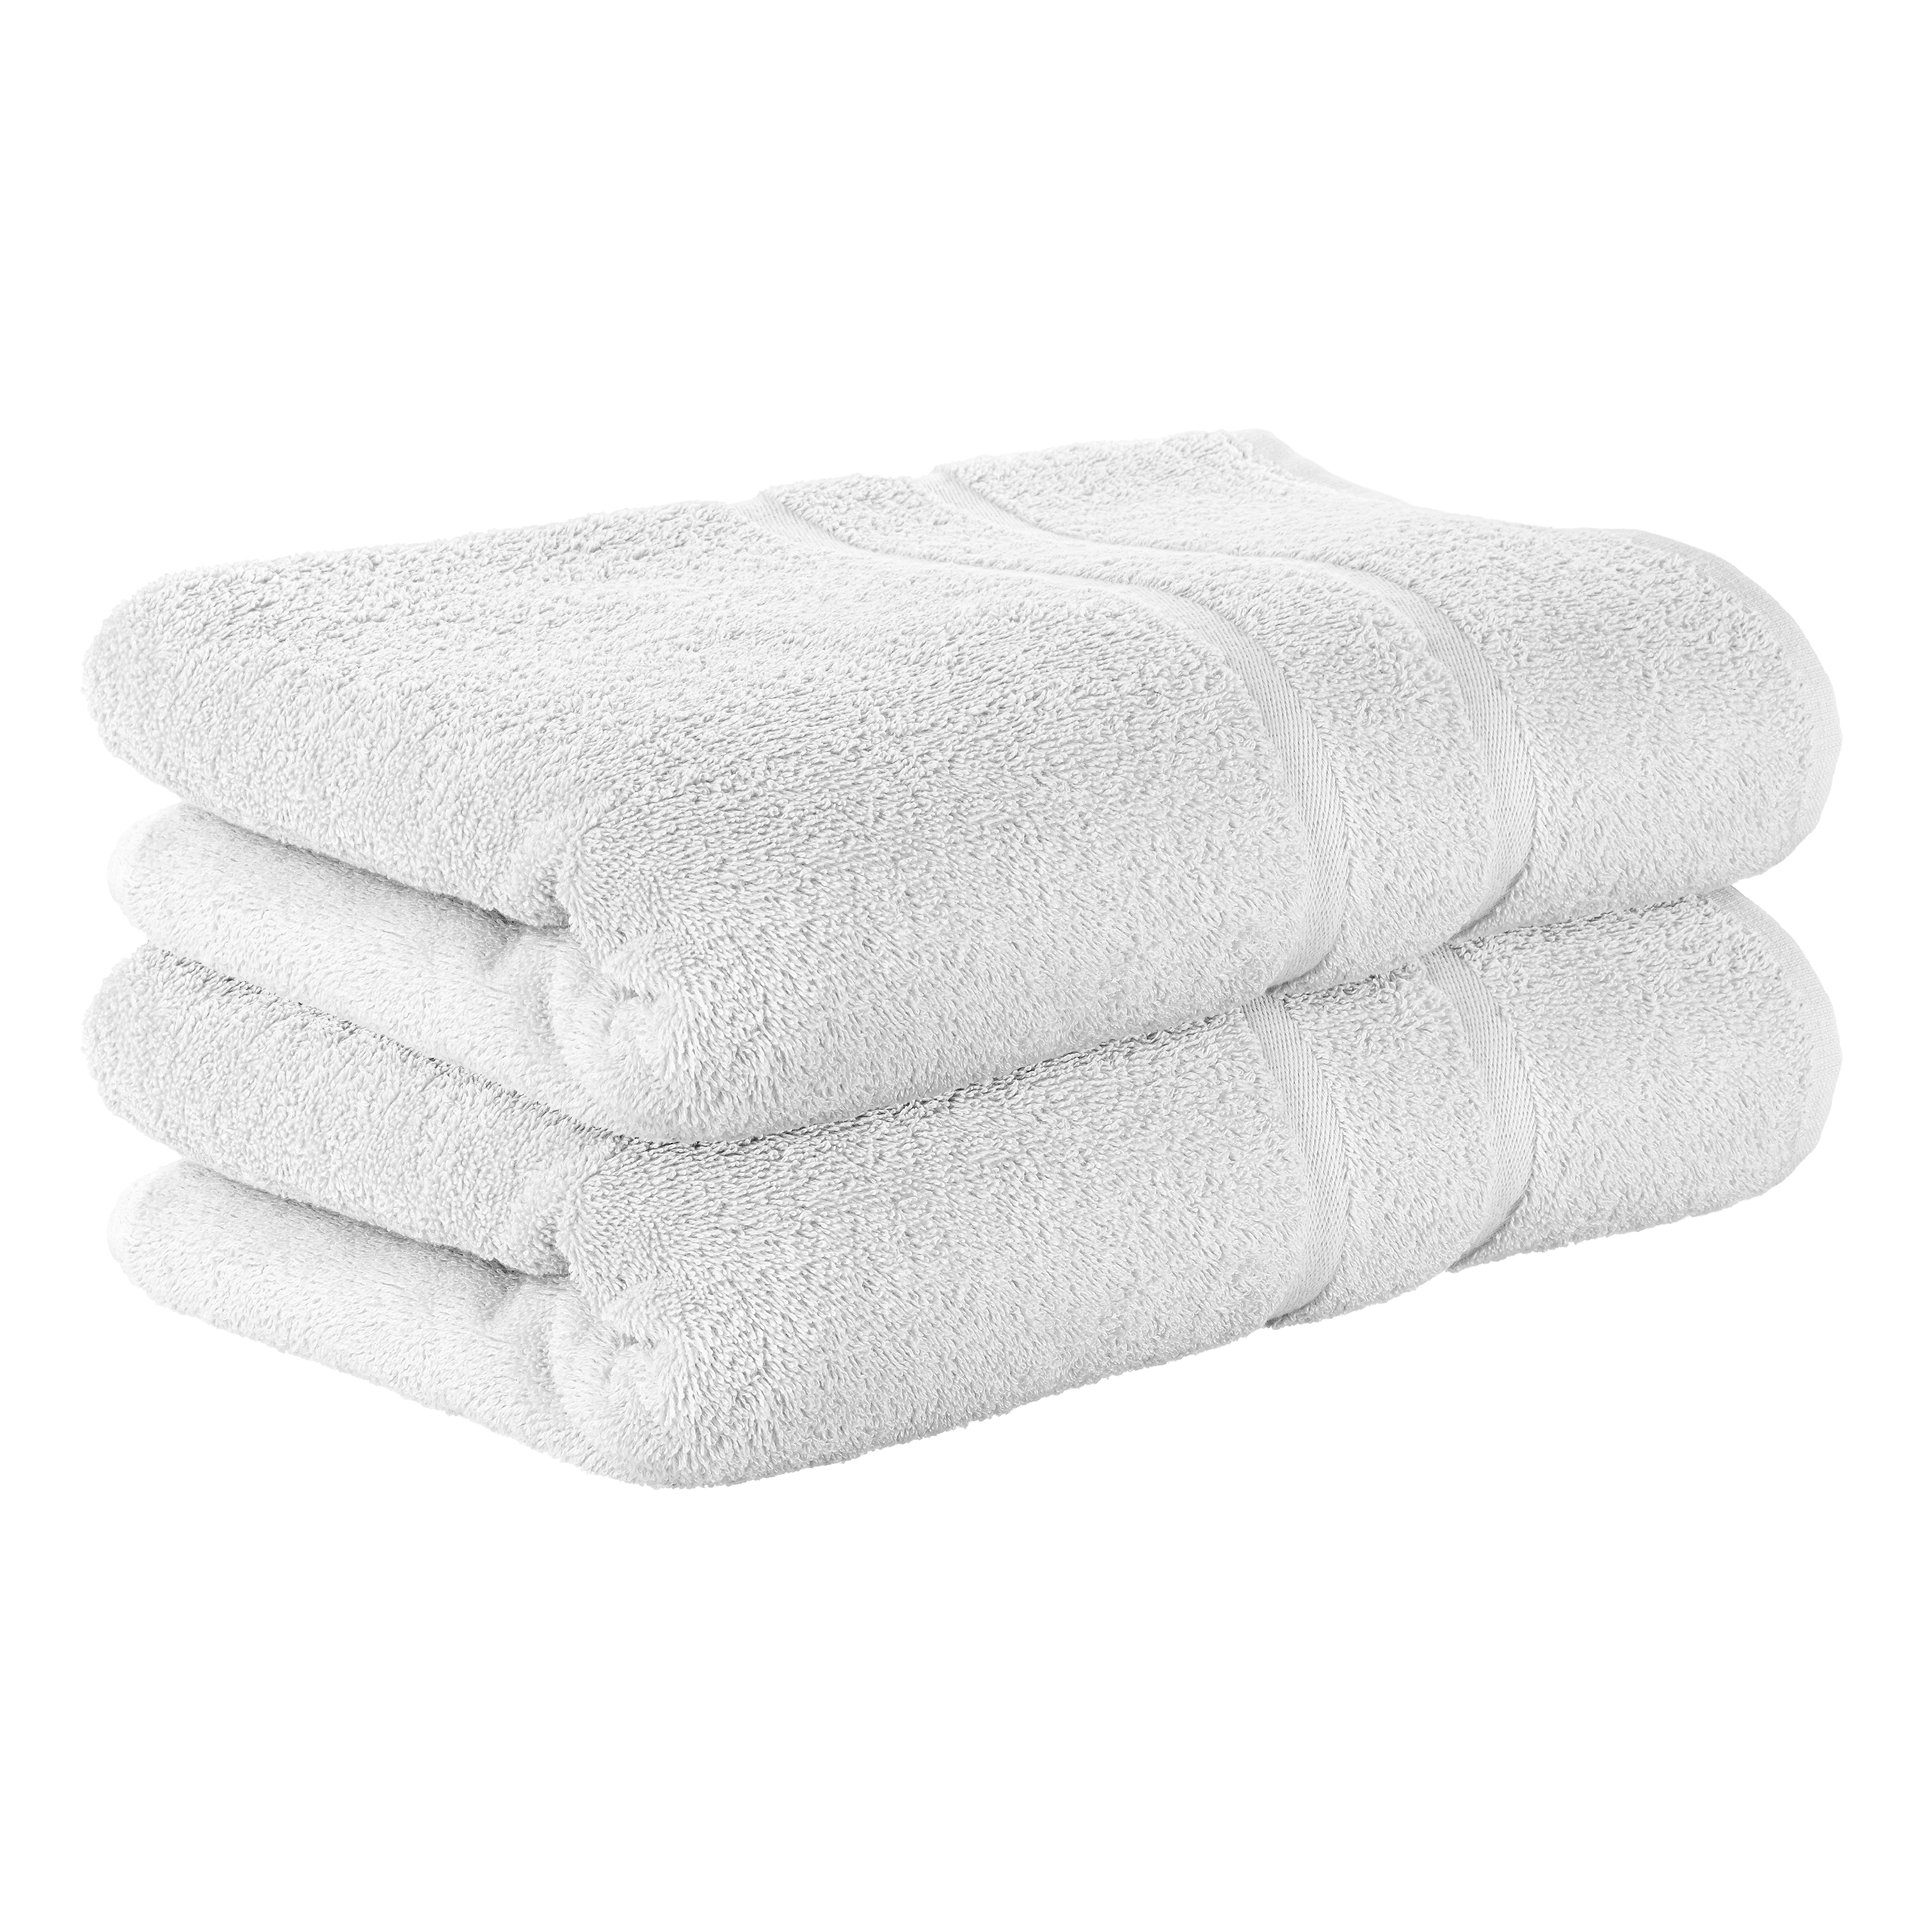 StickandShine Handtuch 2er Set Premium Frottee Handtuch 50x100 cm in 500g/m² aus 100% Baumwolle (2 Stück), 100% Baumwolle 500GSM Frottee Weiß